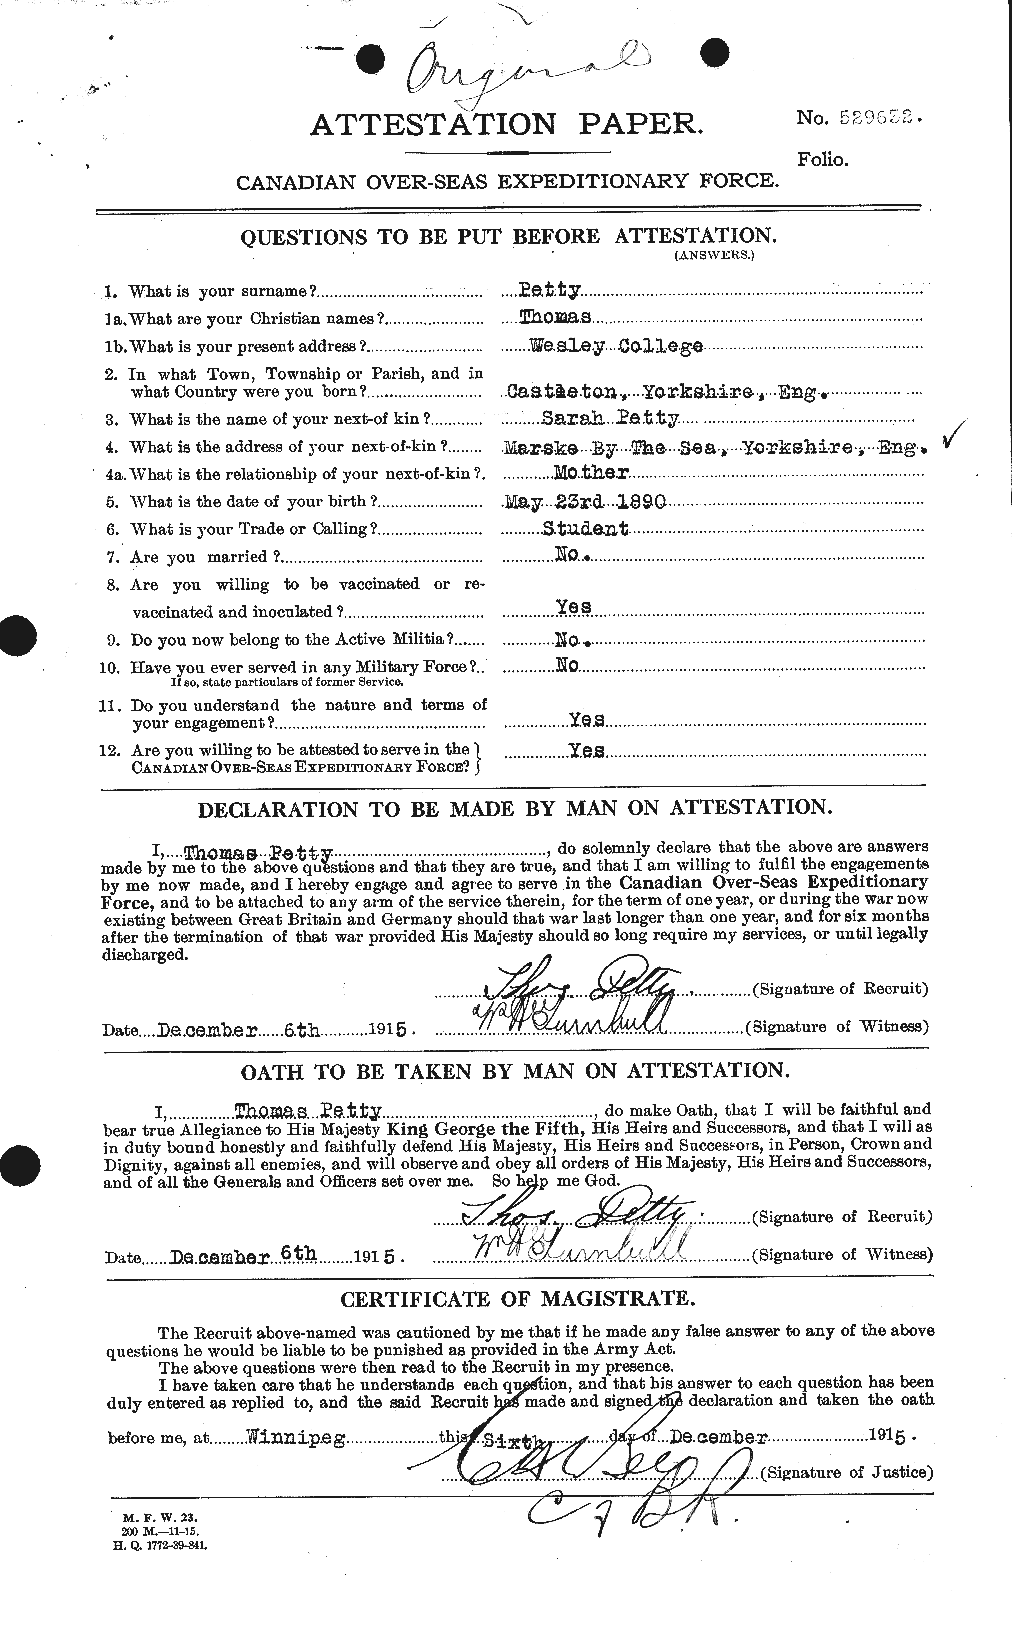 Dossiers du Personnel de la Première Guerre mondiale - CEC 576722a